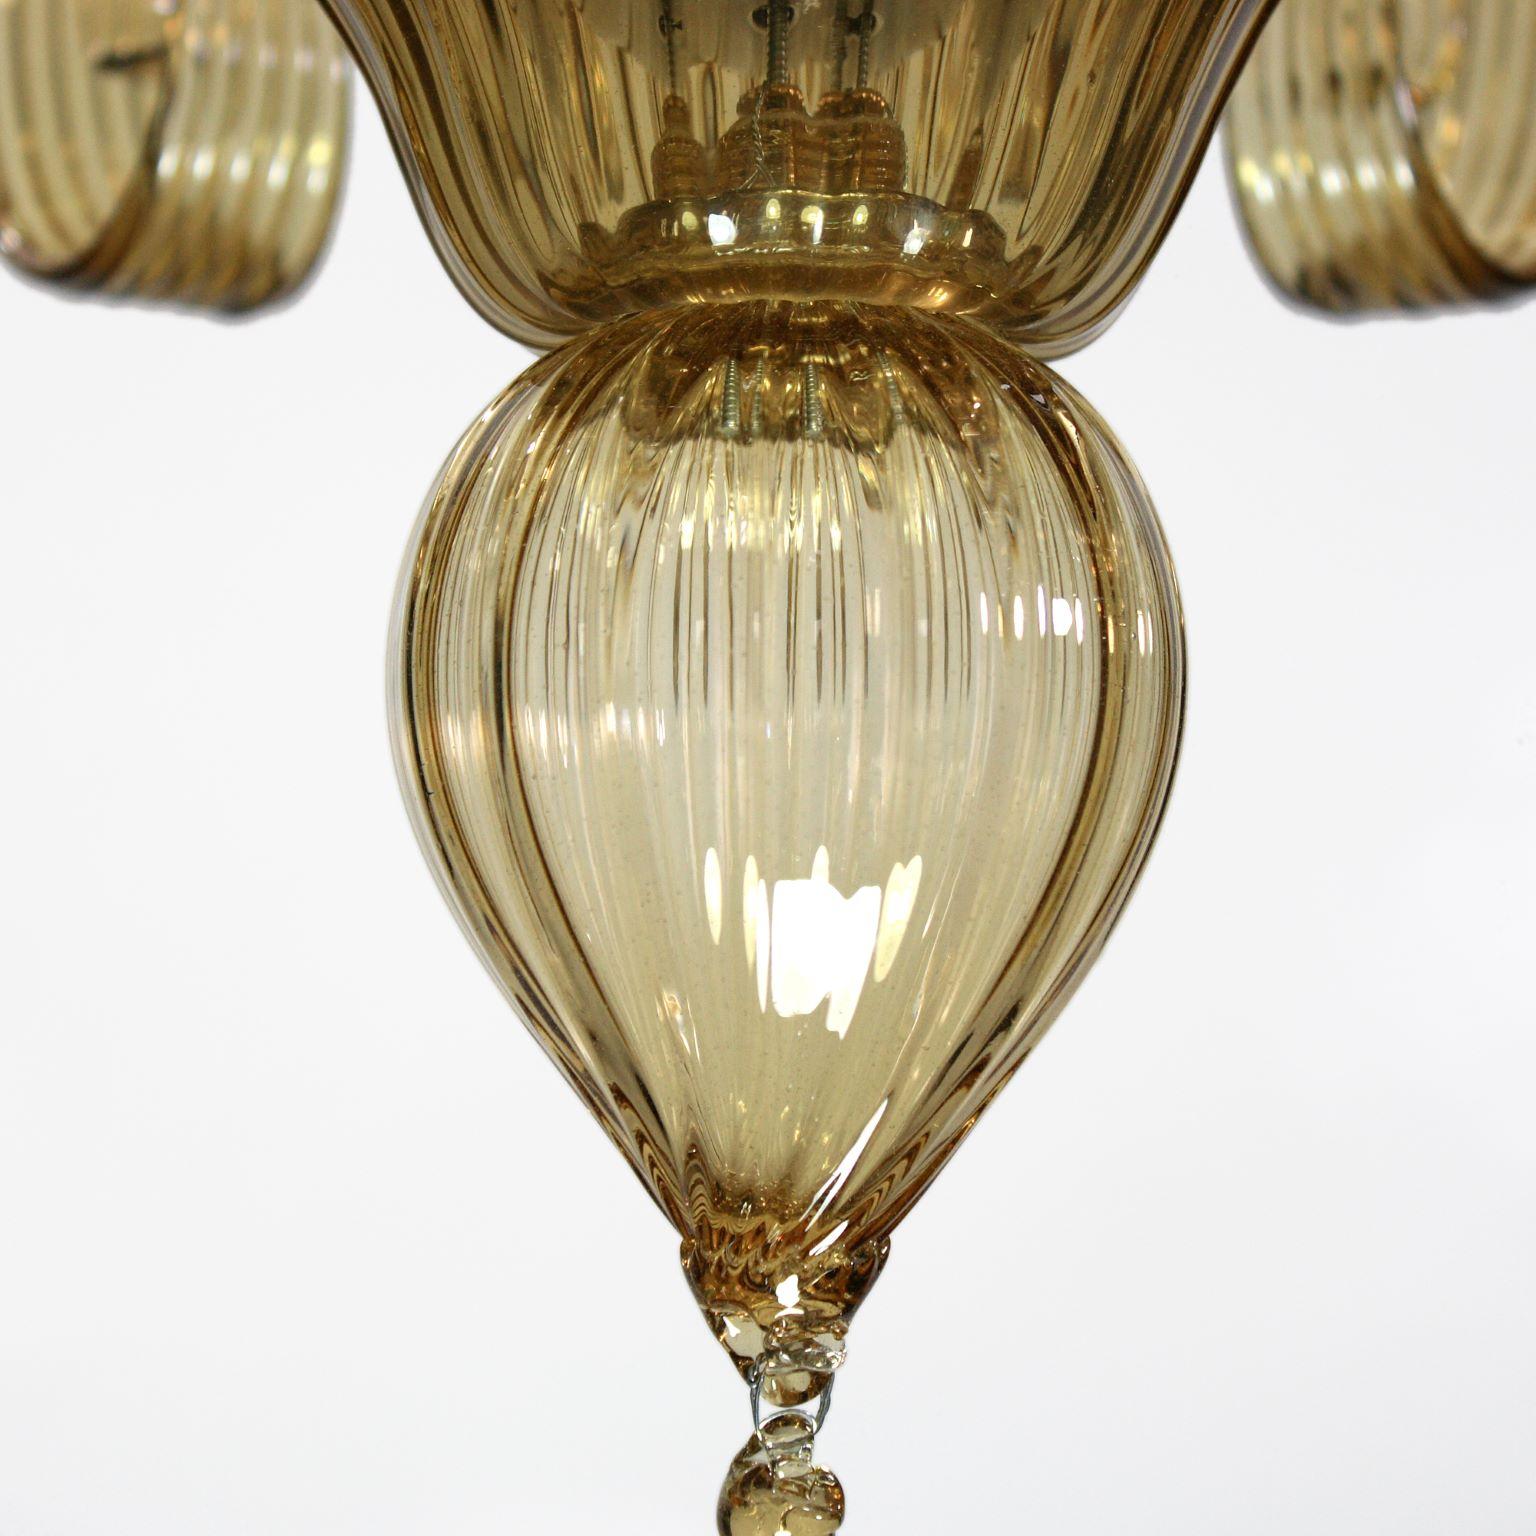 Capriccio de Multiforme est un lustre à 6 lumières, en verre artistique paille, avec des éléments ornementaux frisés.
Inspiré de la tradition classique vénitienne, il se caractérise par une colonne centrale où sont installés de nombreux éléments